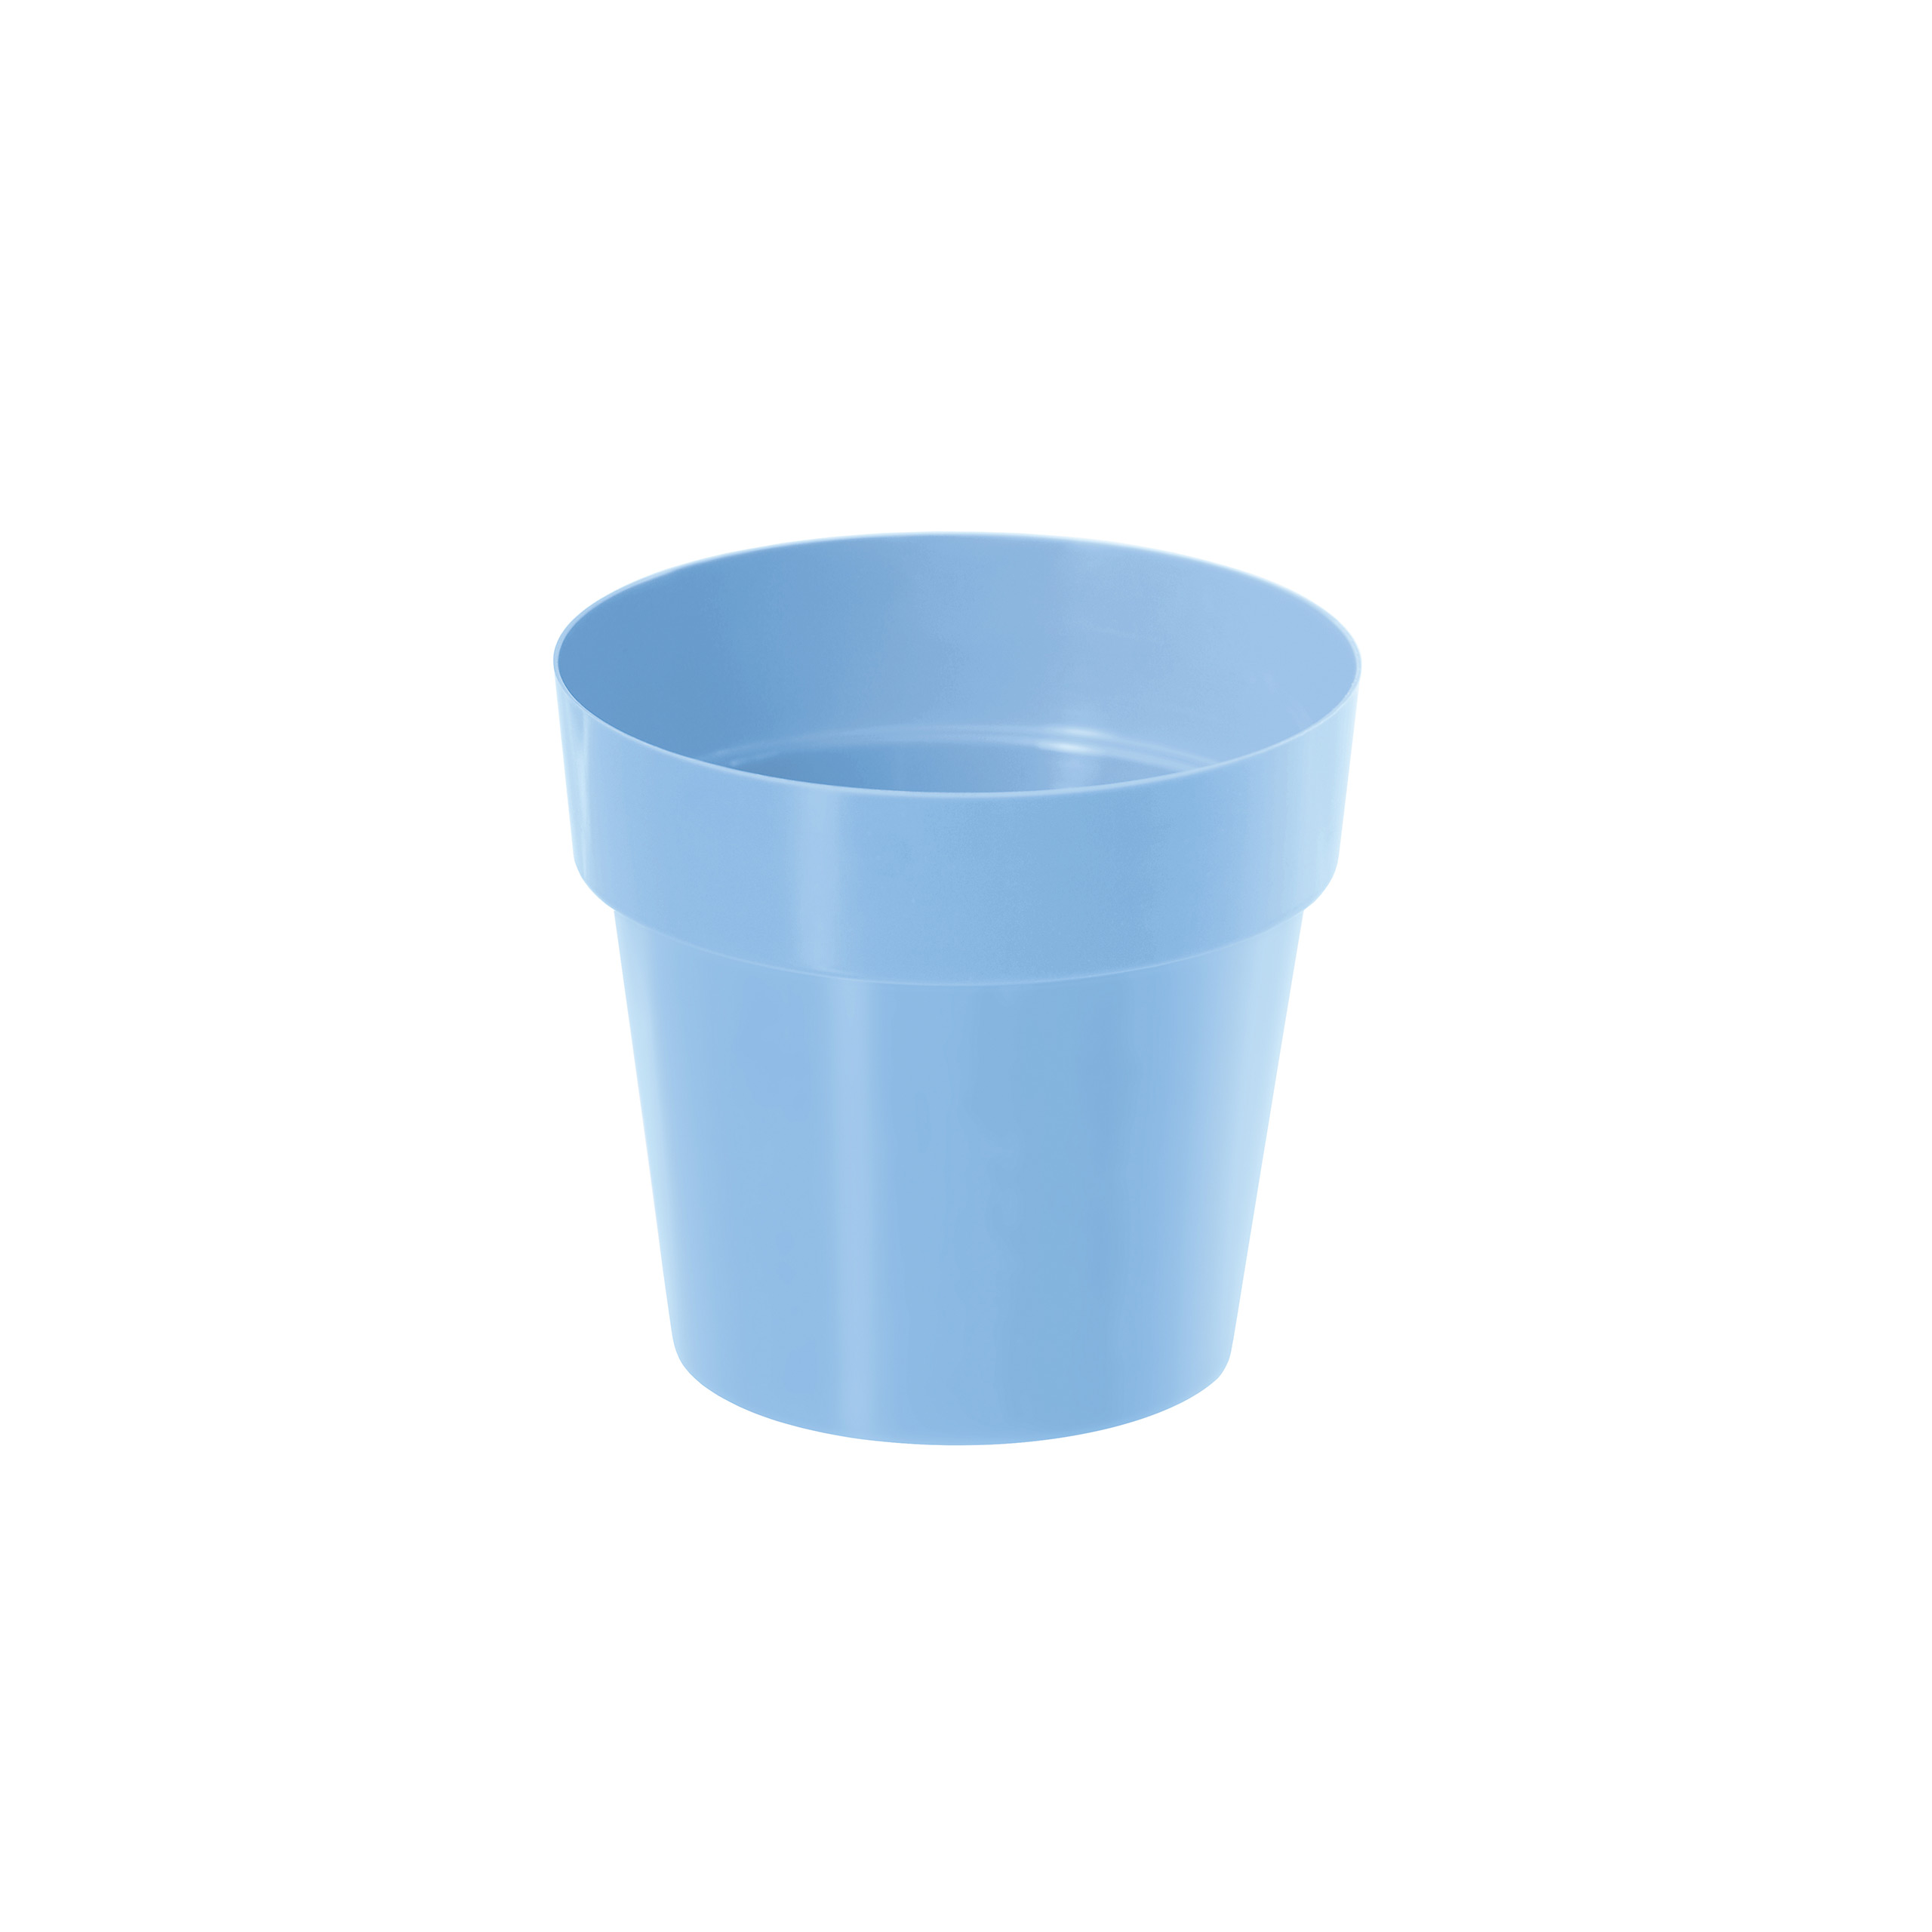 IML flowerpot DR140 Blue